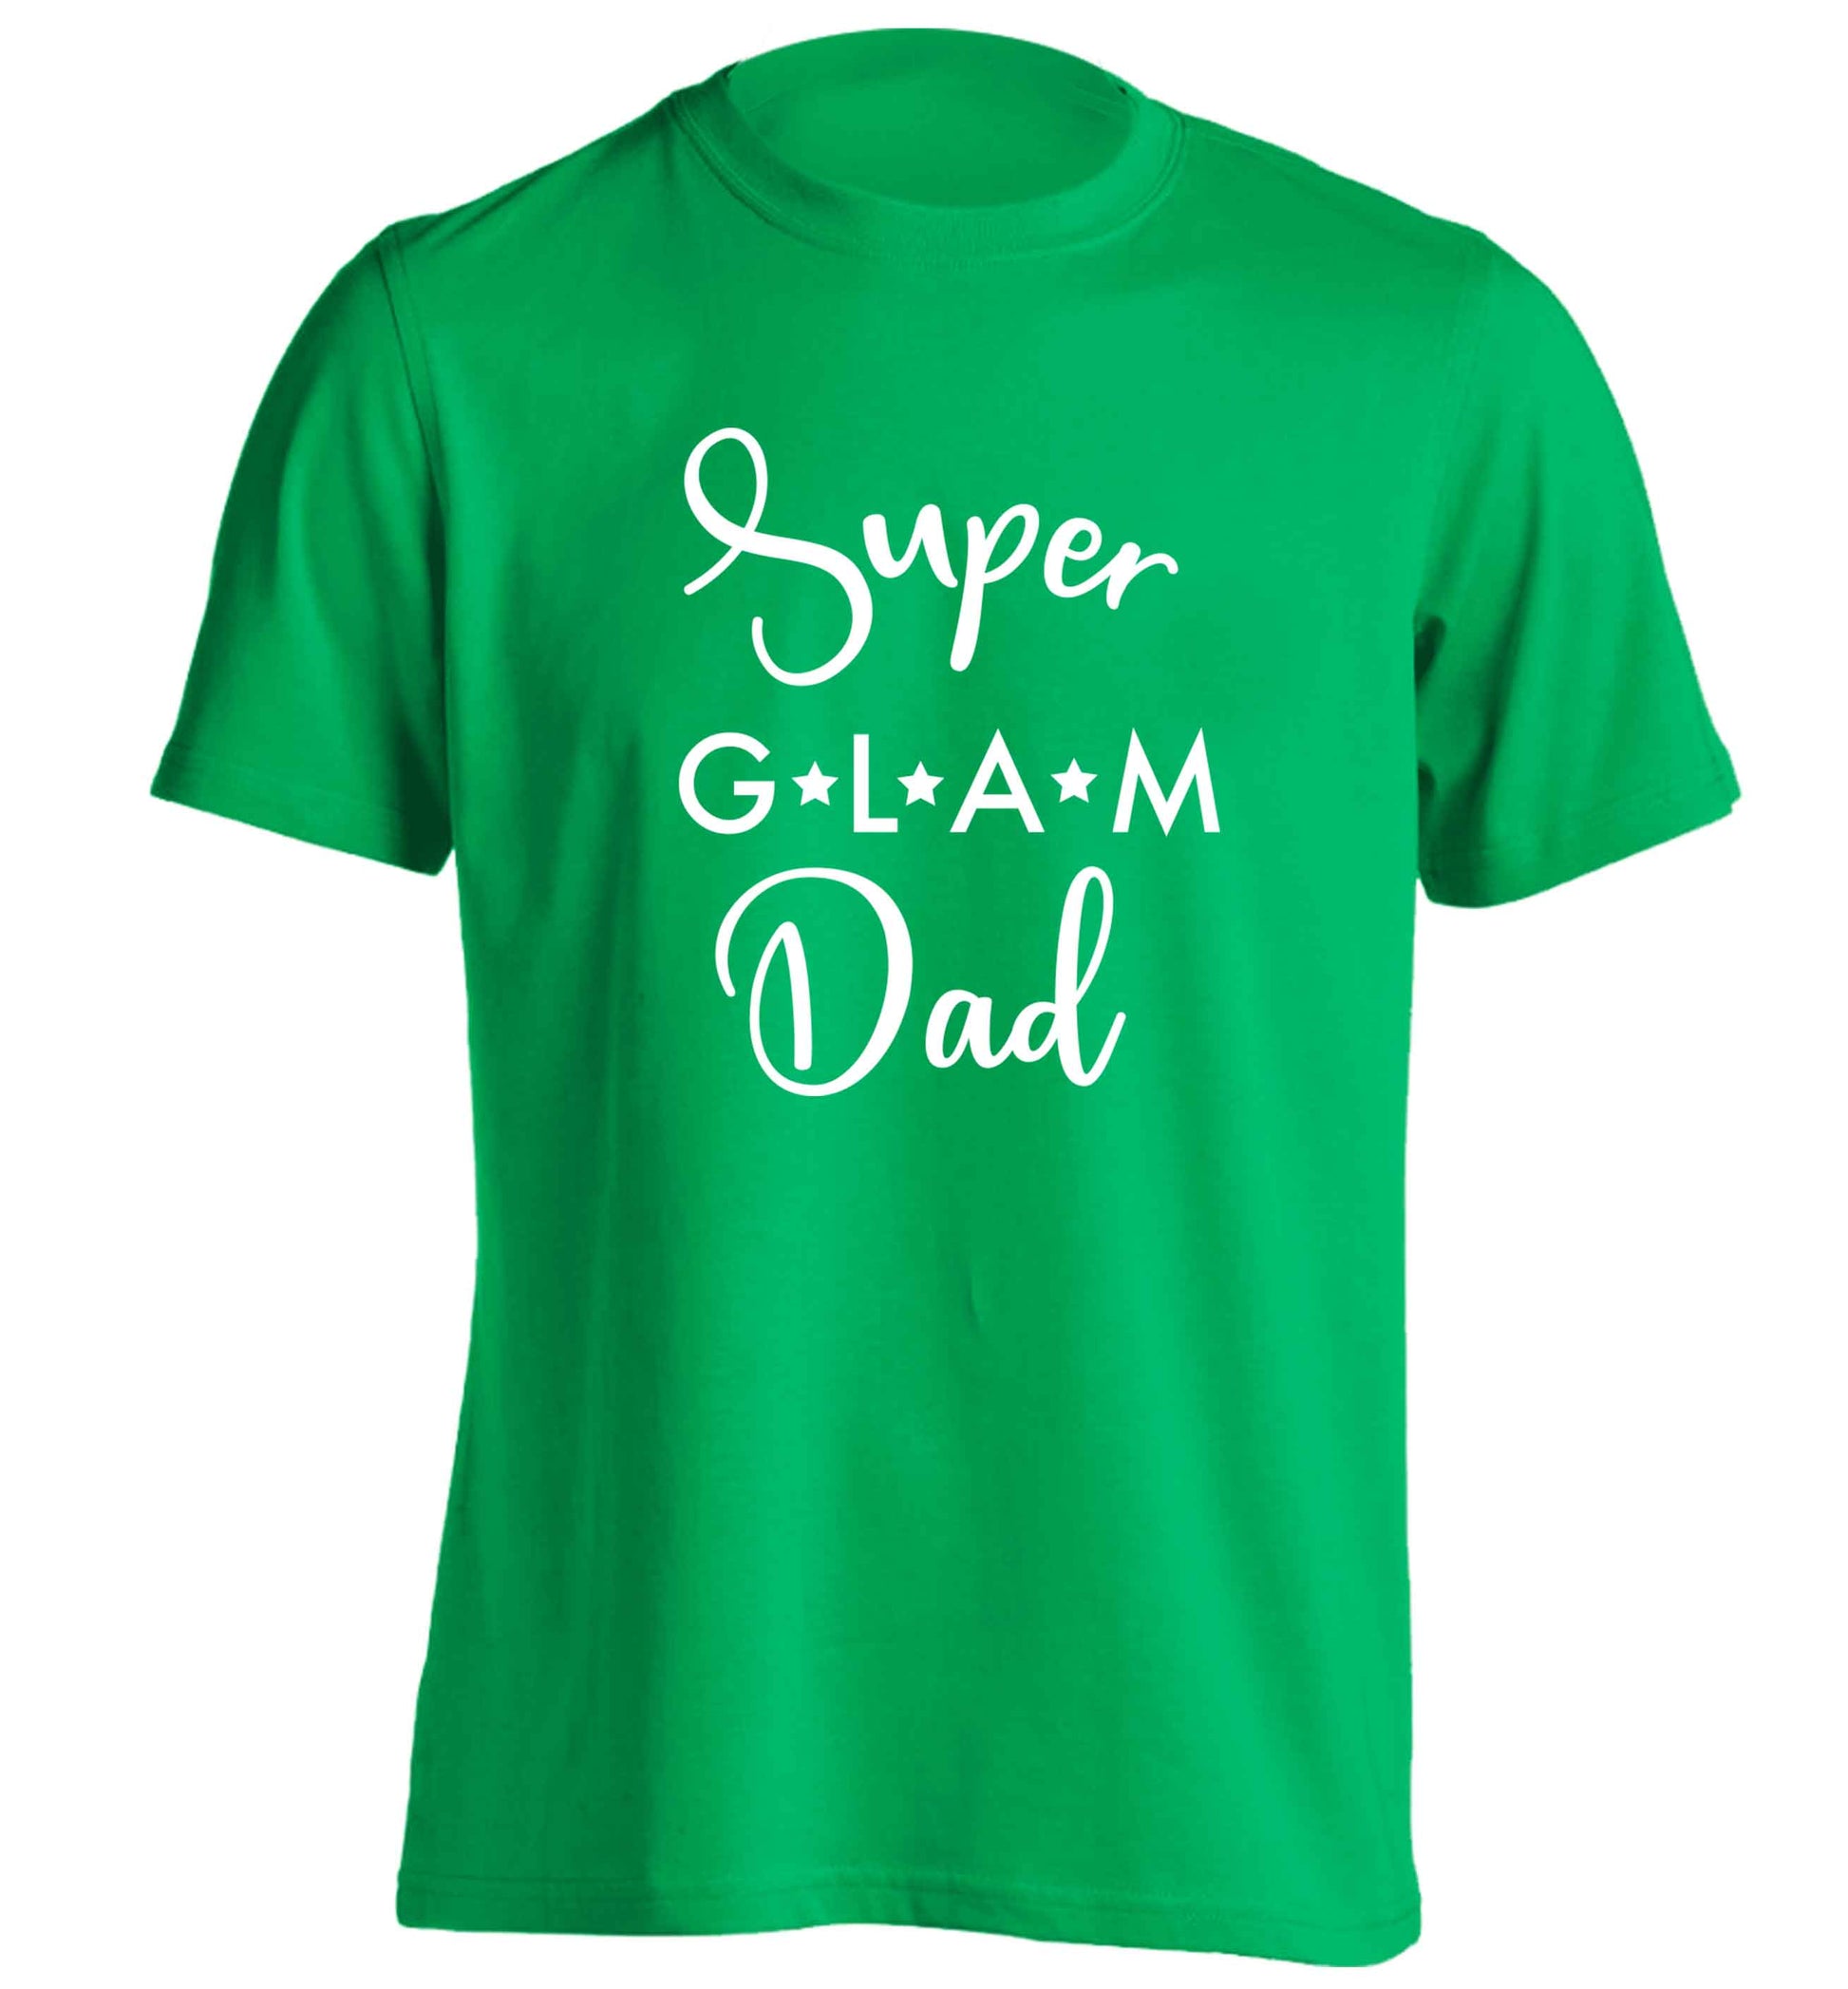 Super glam Dad adults unisex green Tshirt 2XL